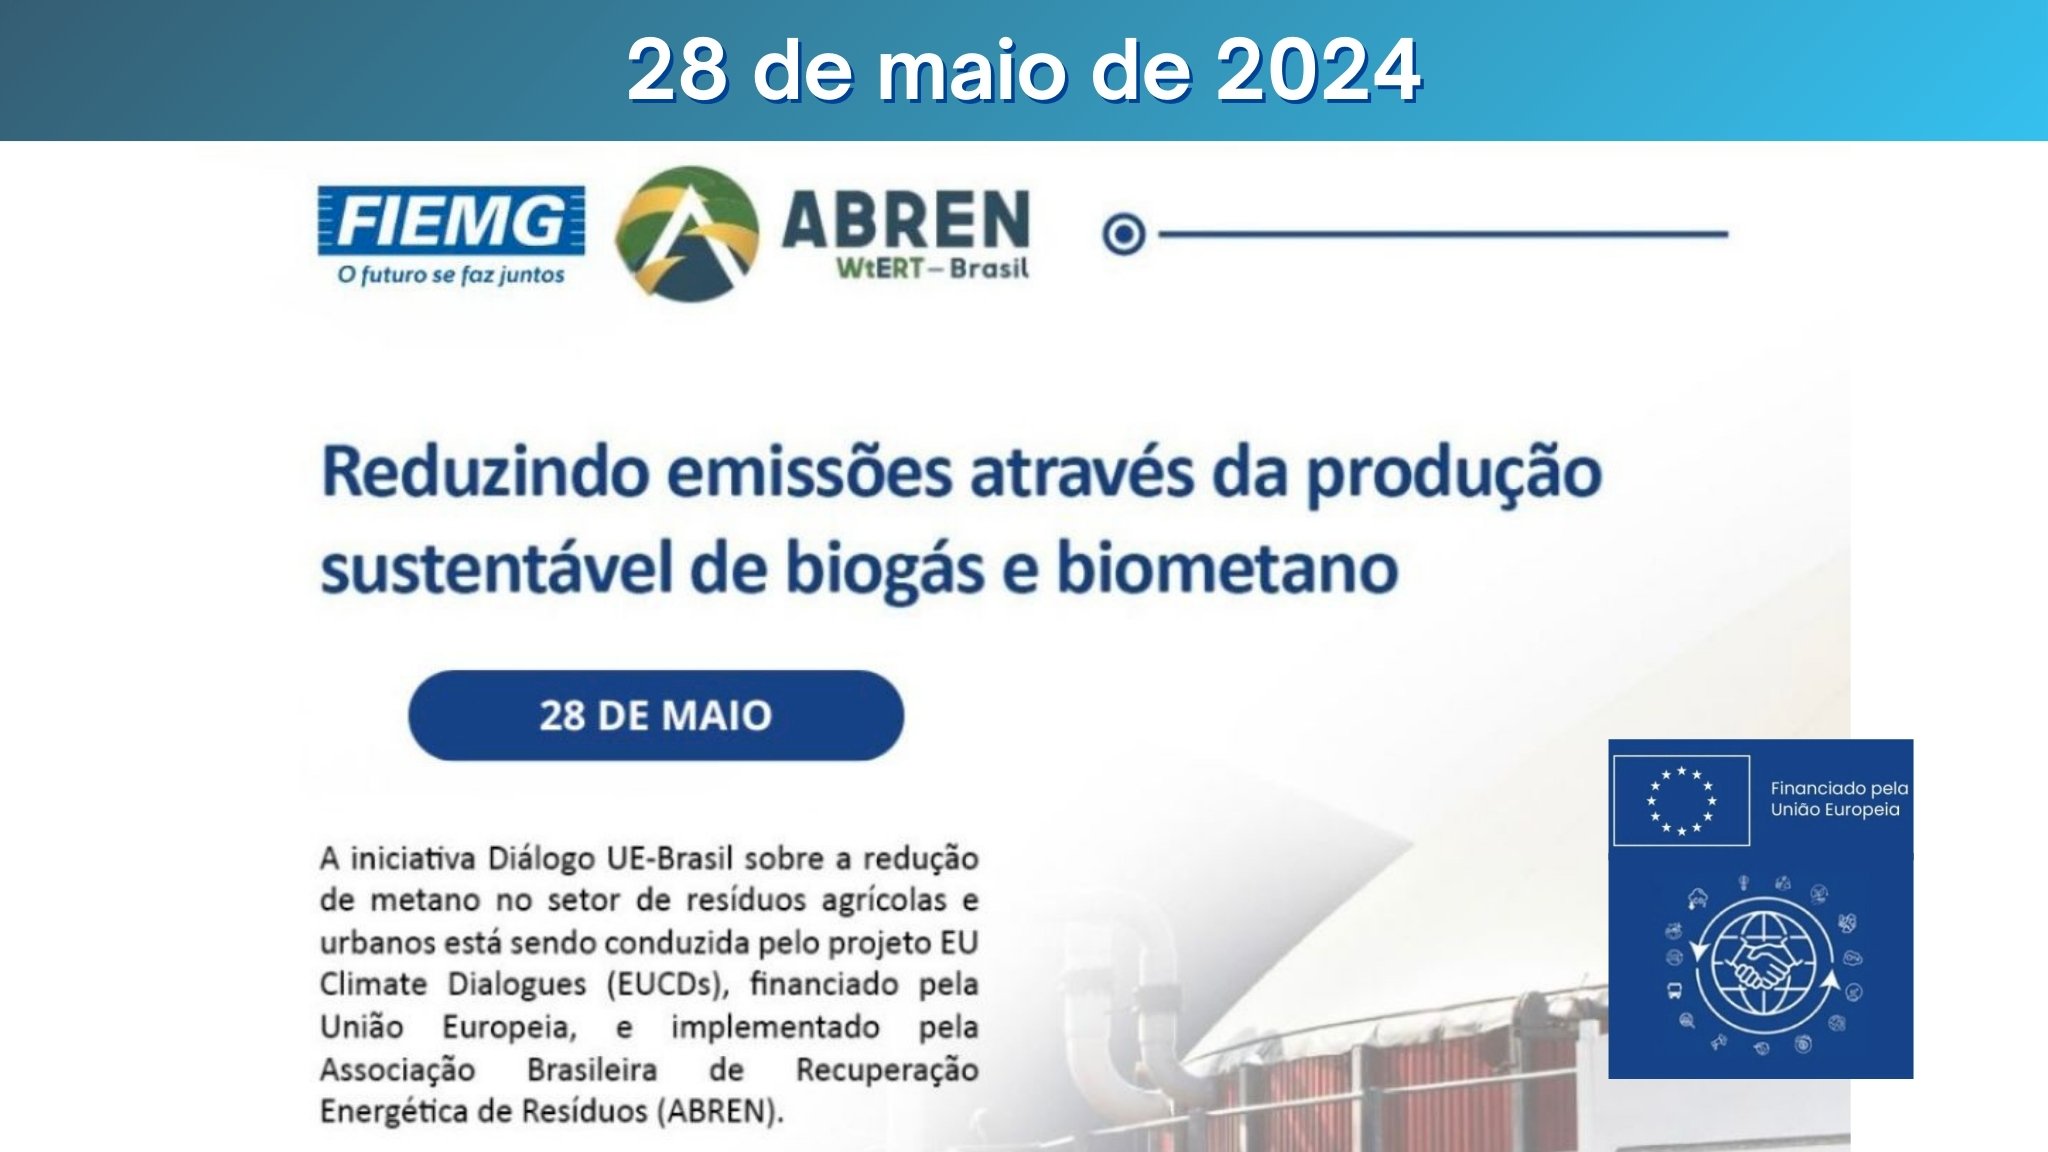 Reduzindo emissões através da produção de biogás e biometano